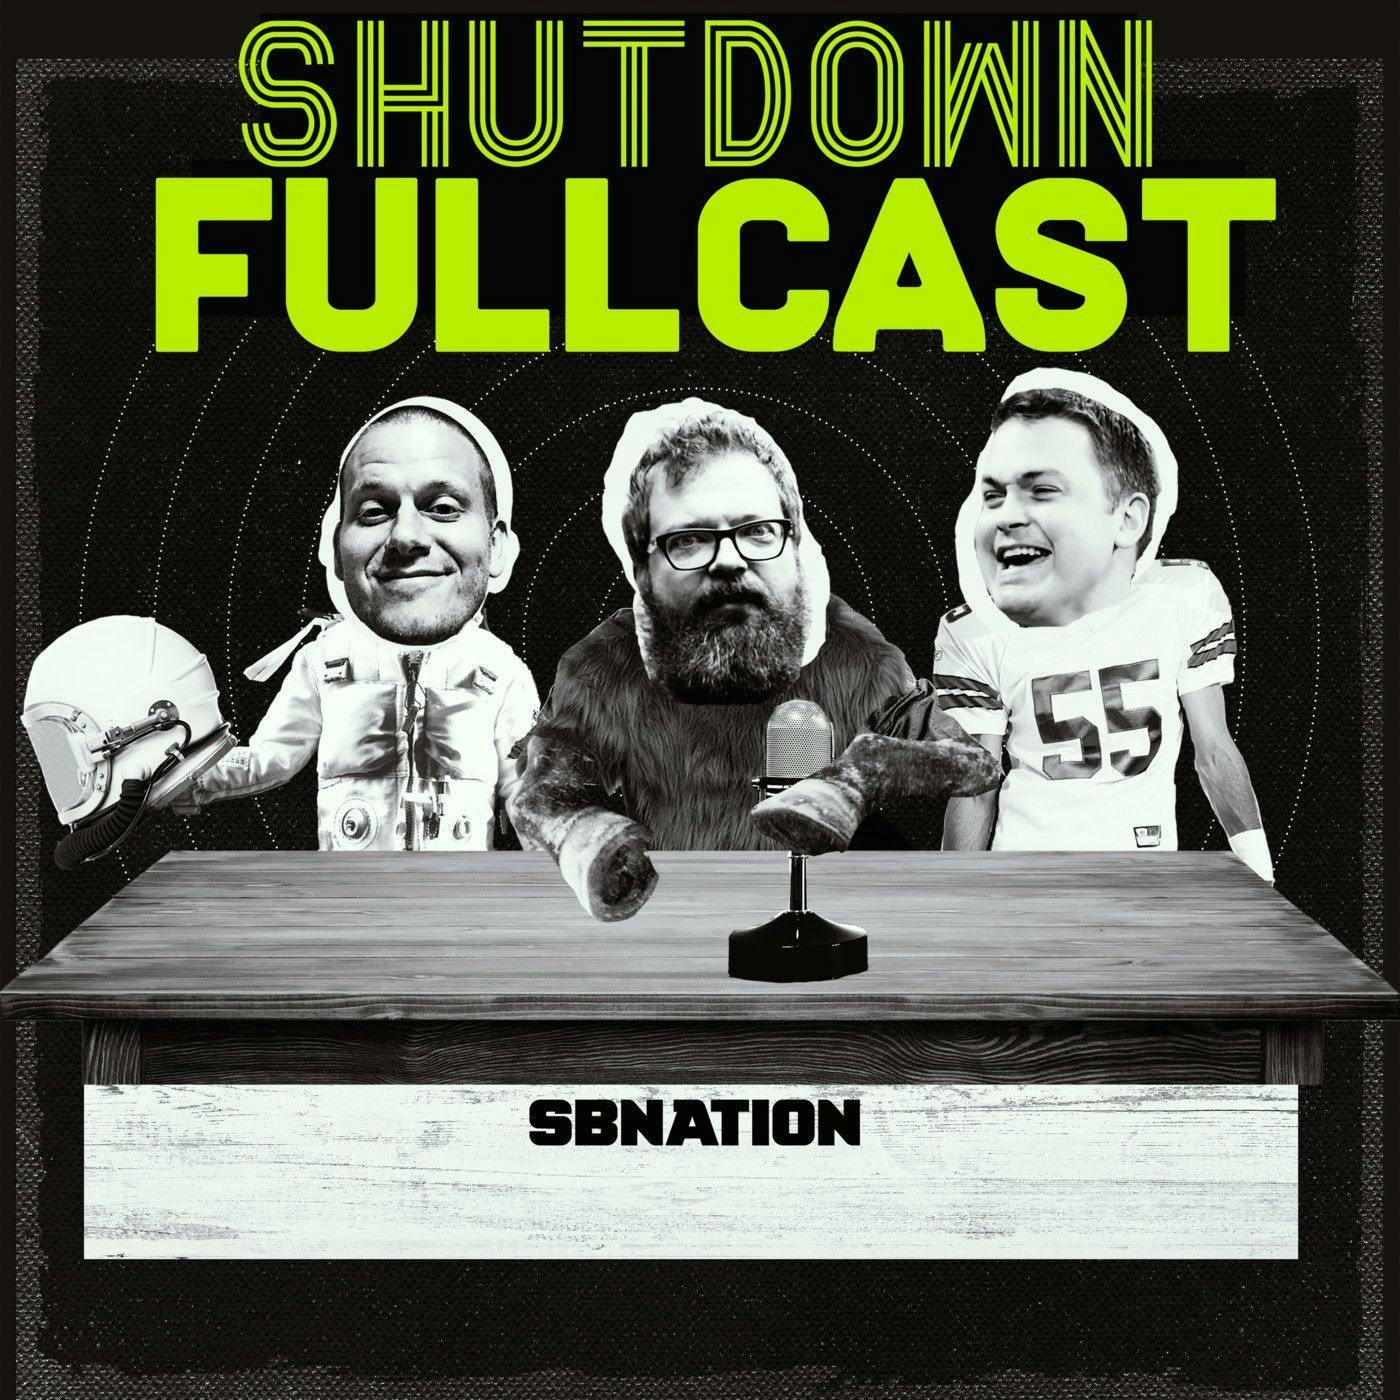 Shutdown Fullcast 40 for 40: The 2017 Cactus Bowl